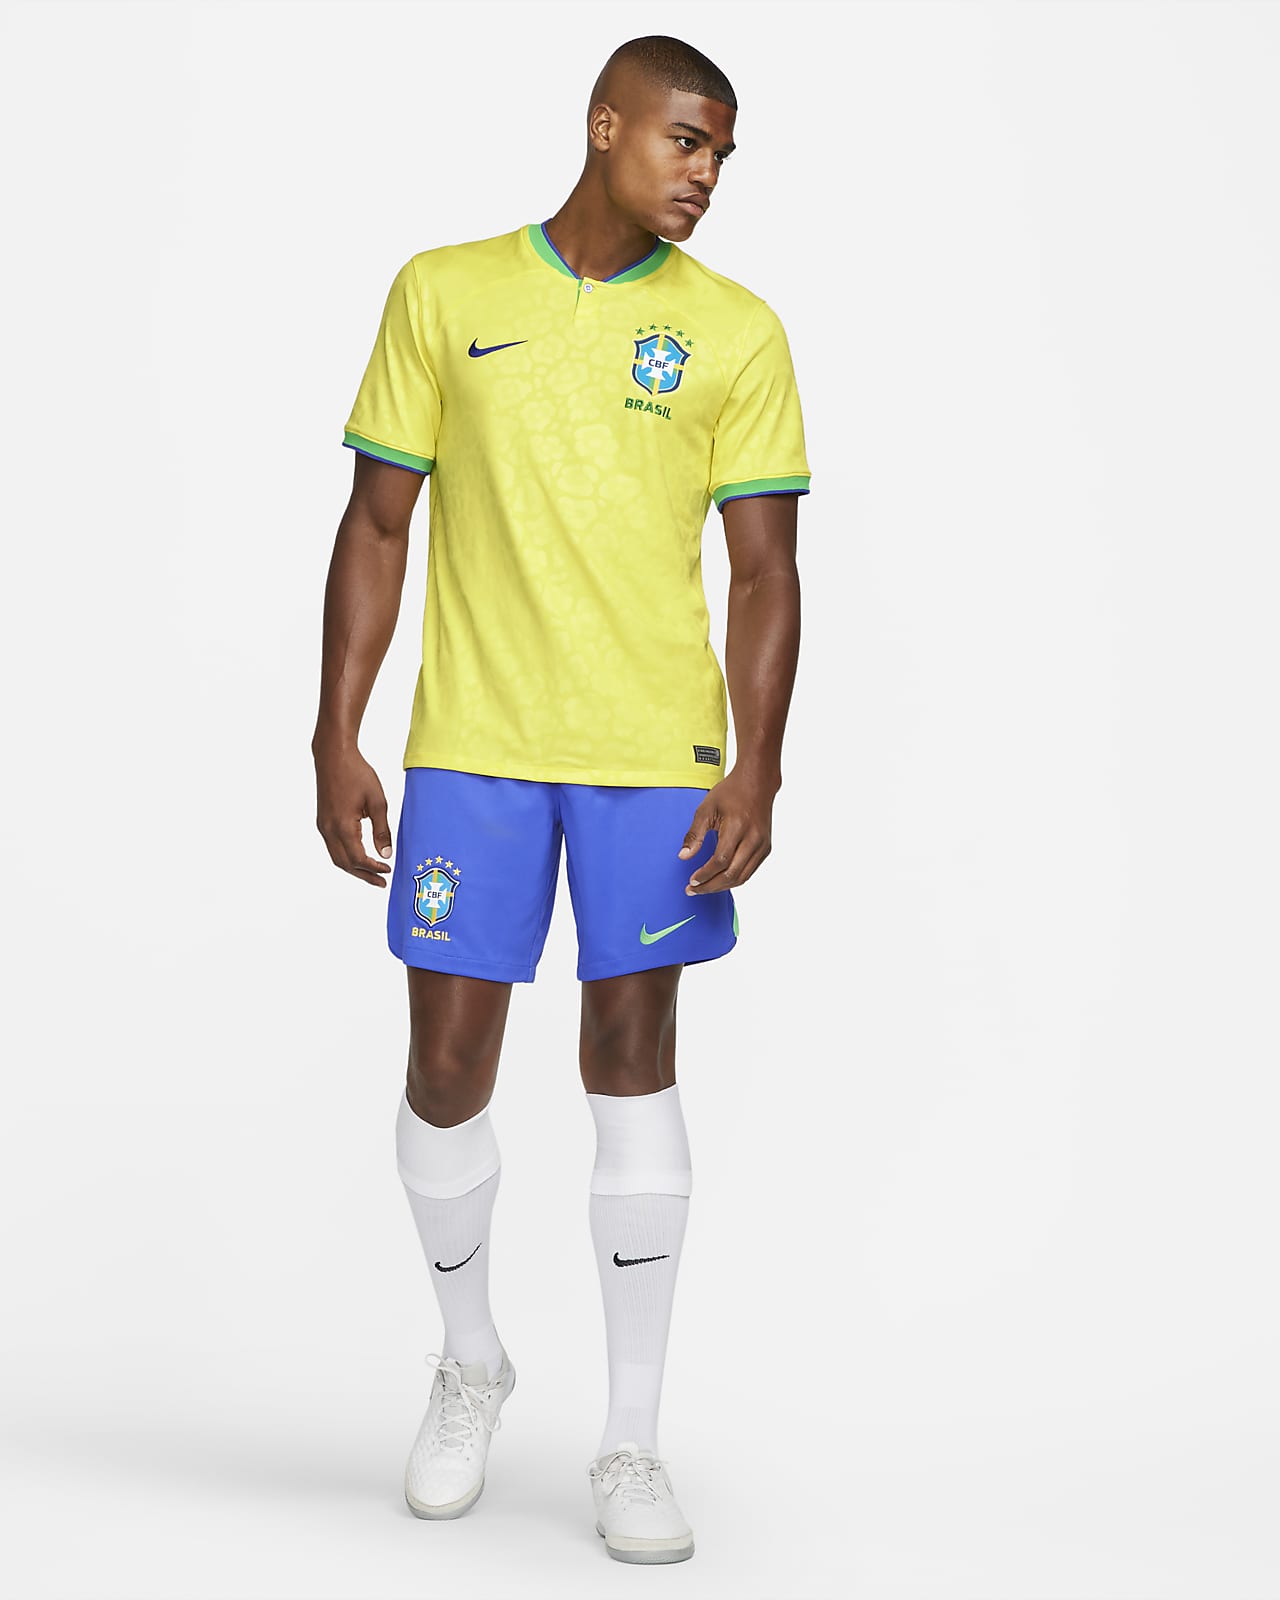 Leisure t-shirt BRAZIL Nike evergreen crest World Cup Qatar 2022 Men's  Blue Original